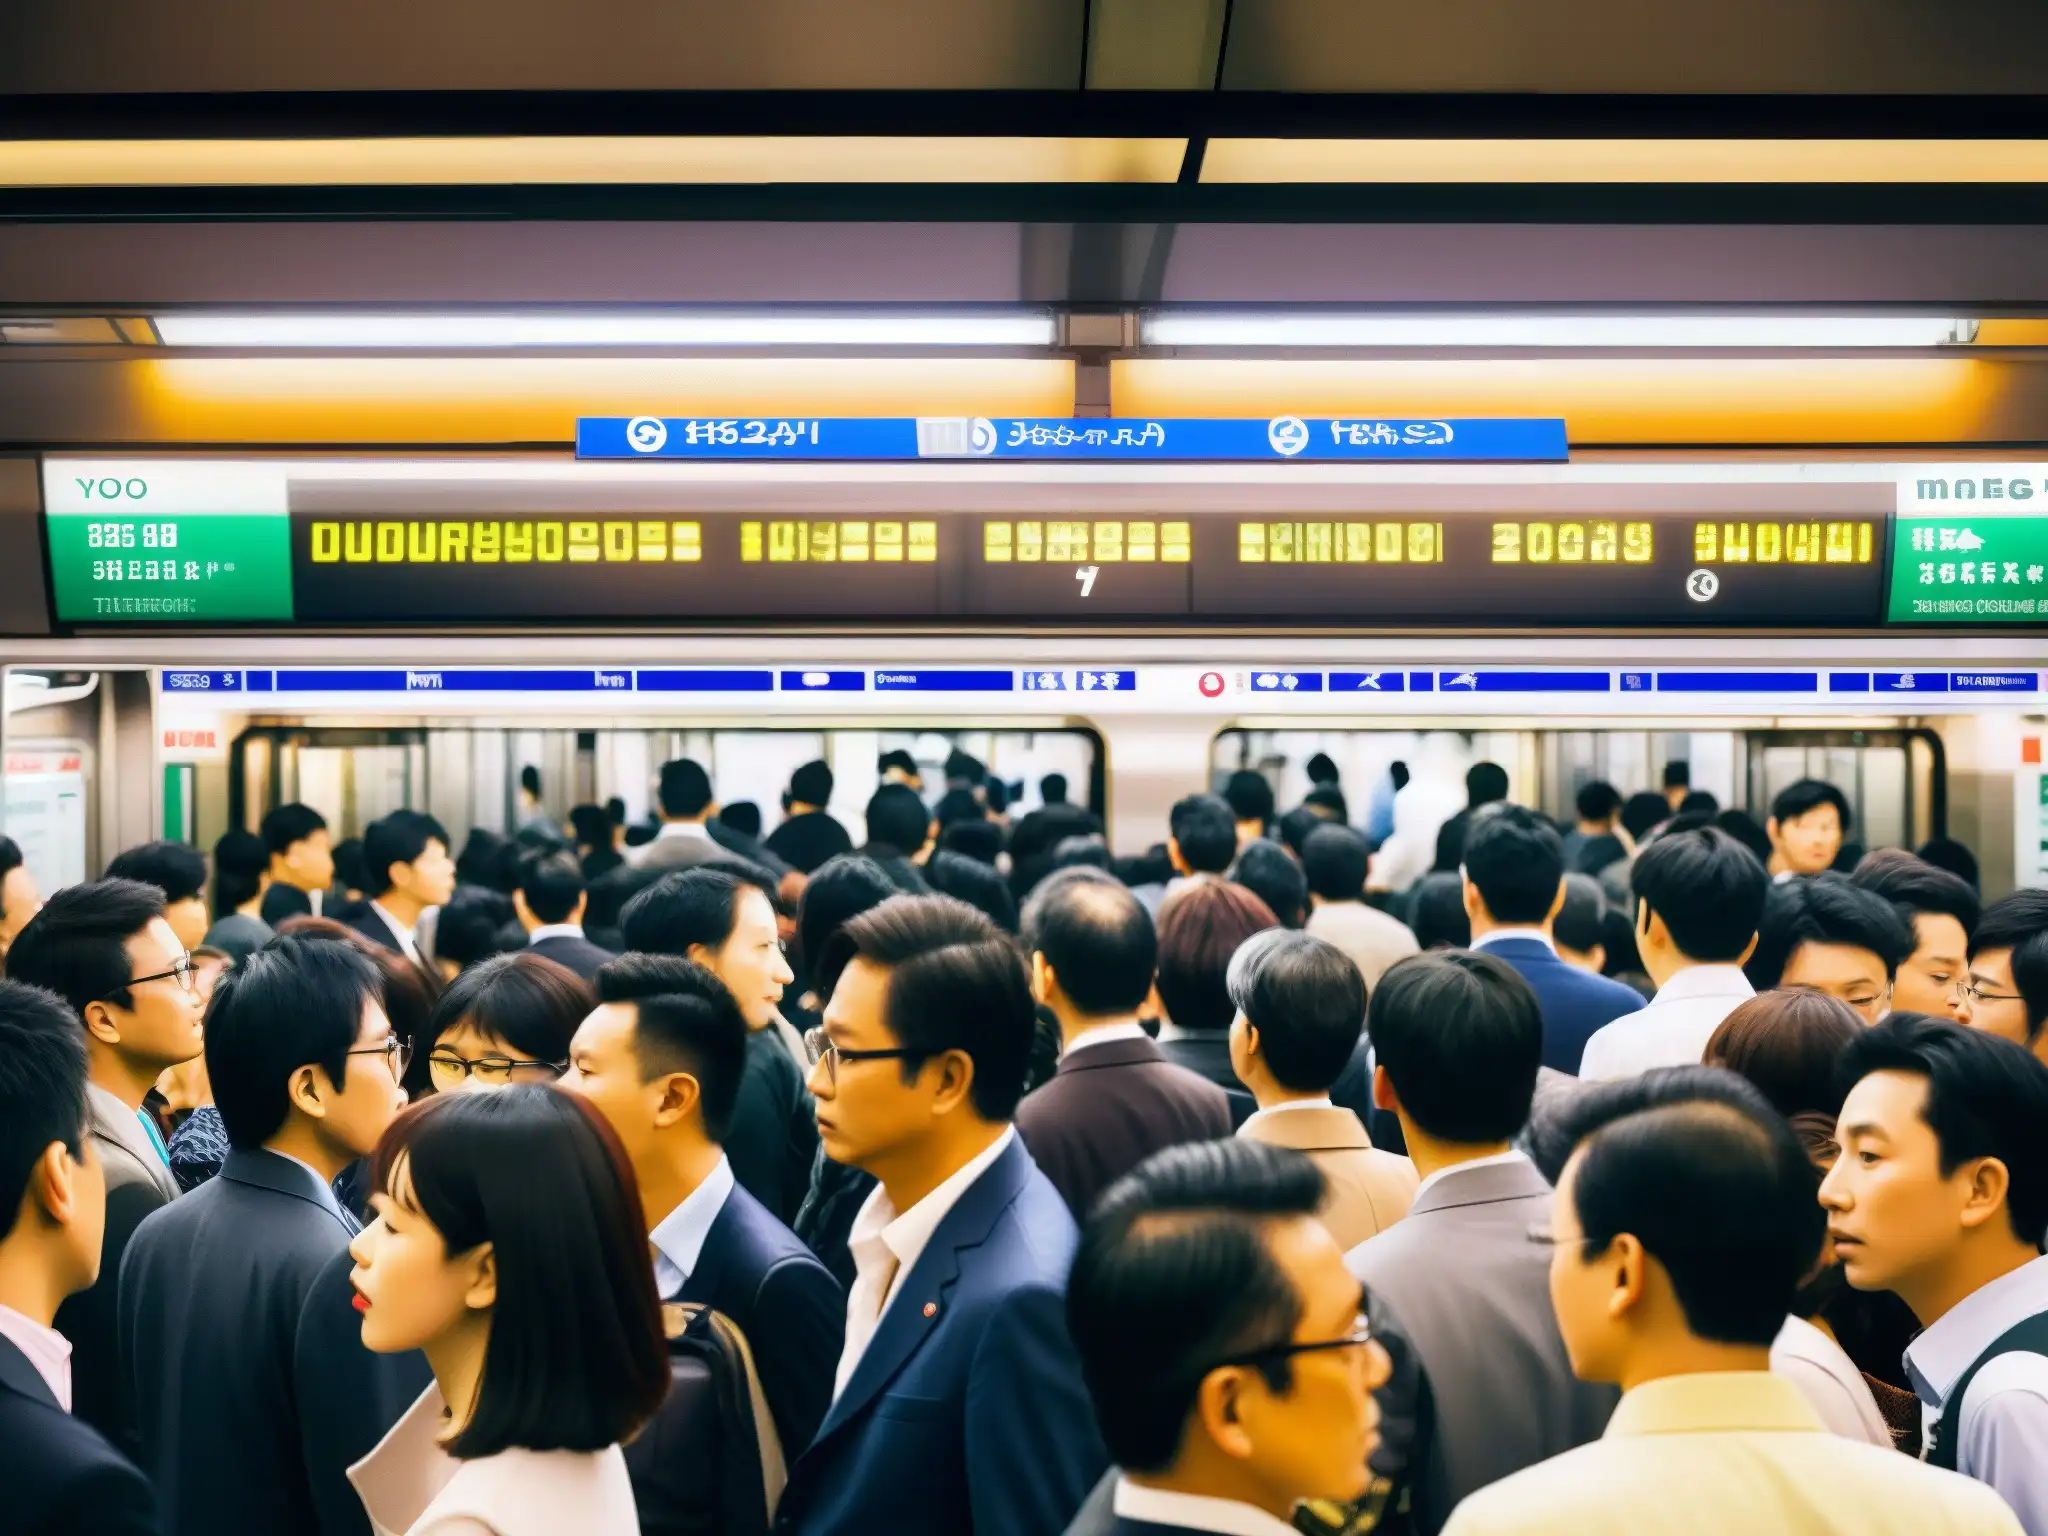 Una bulliciosa estación del metro de Tokio durante la hora pico, con pasajeros esperando en el andén y pantallas mostrando horarios de trenes